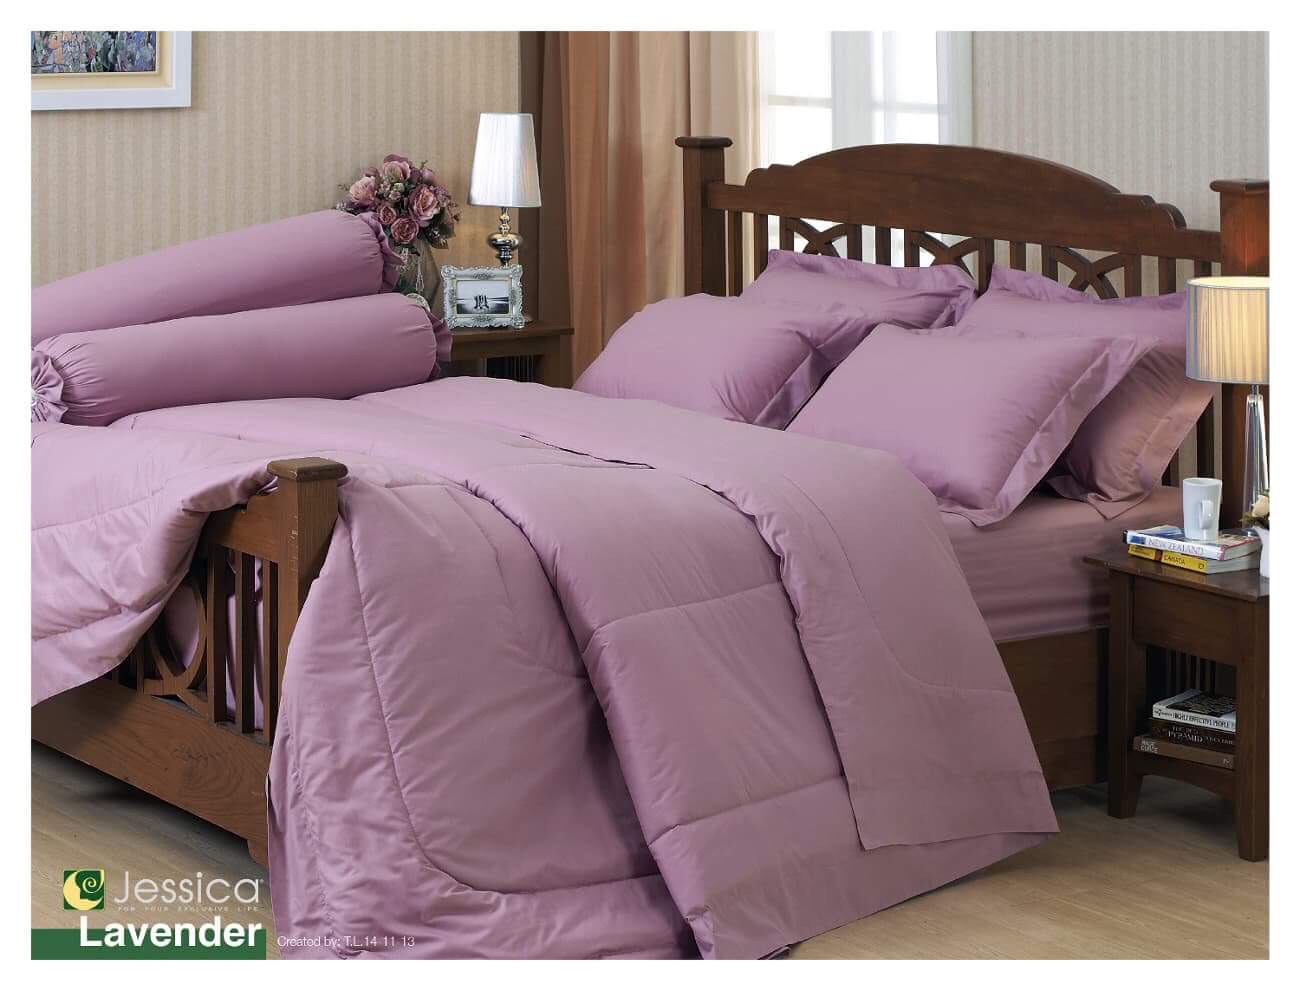 ชุดผ้าปูที่นอน / ชุด ผ้าปู + นวม สีพื้น ชมพู lavender ขนาด 3.5 5 6ฟุต ชุดเครื่องนอน ผ้านวม ผ้าปู ที่นอน แท้ wonderful bedding สี พื้น